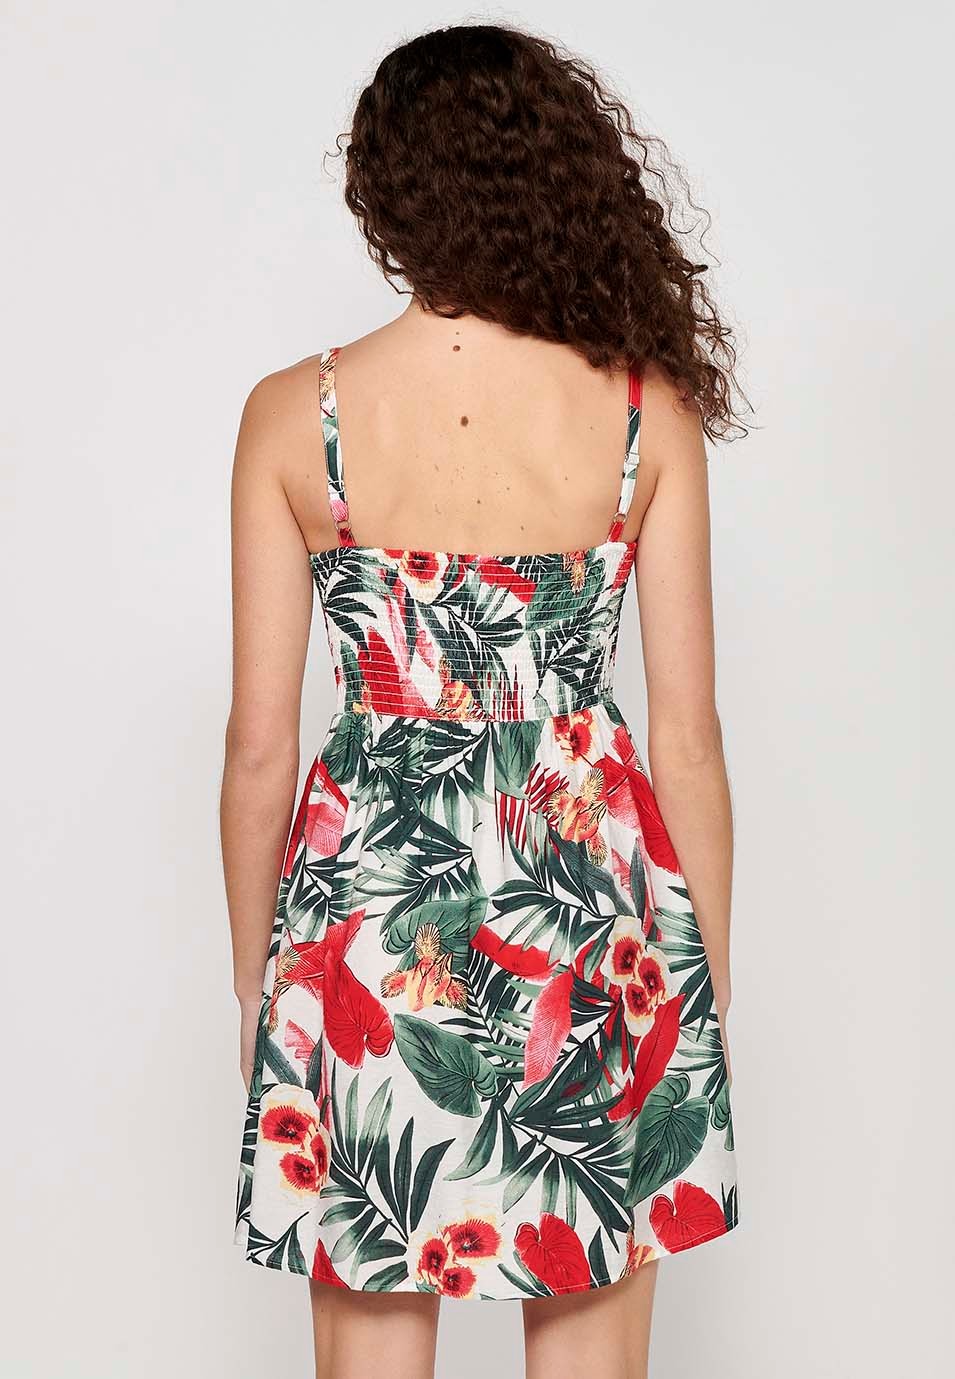 Robe pour femme à imprimé floral tropical, col en V, bretelles boutonnées sur le devant, dos caoutchouté, multicolore 5